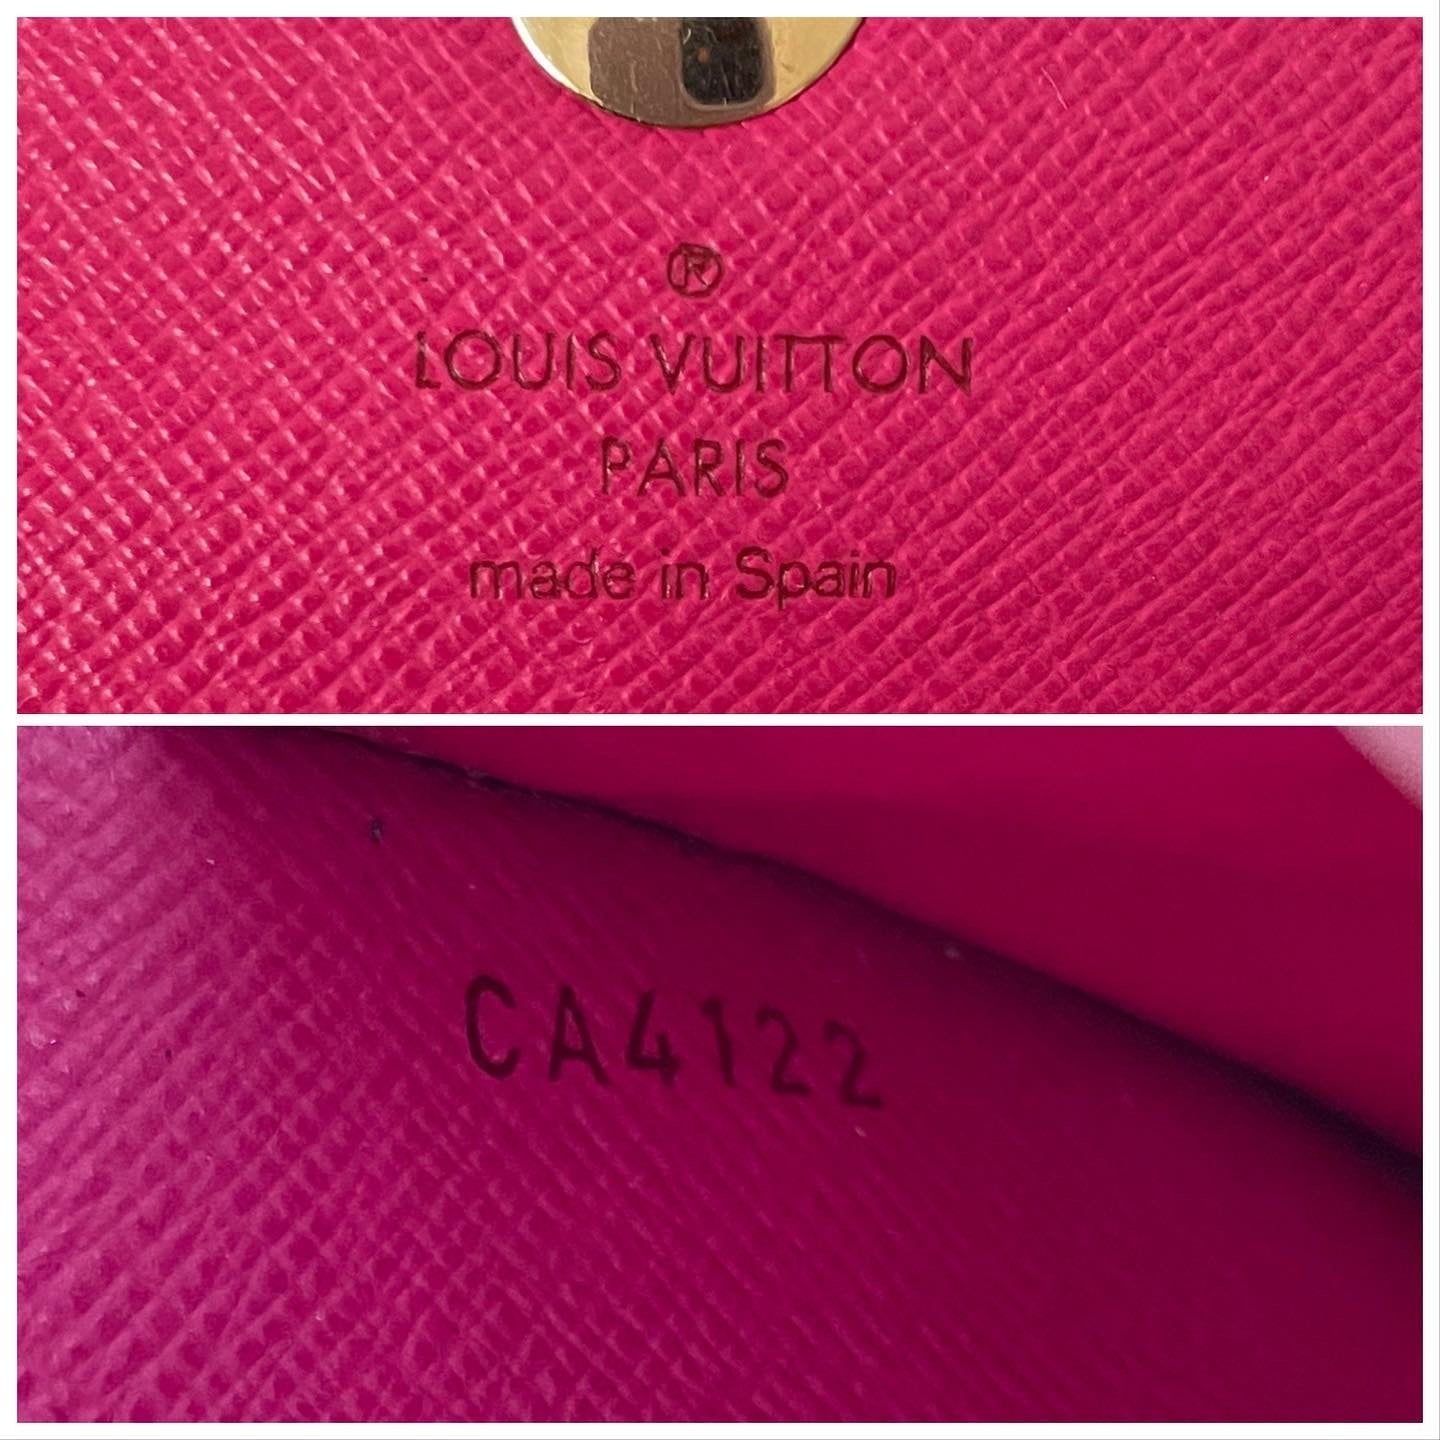 PRELOVED Louis Vuitton Black Multicolor Sarah Wallet TH0095 011623